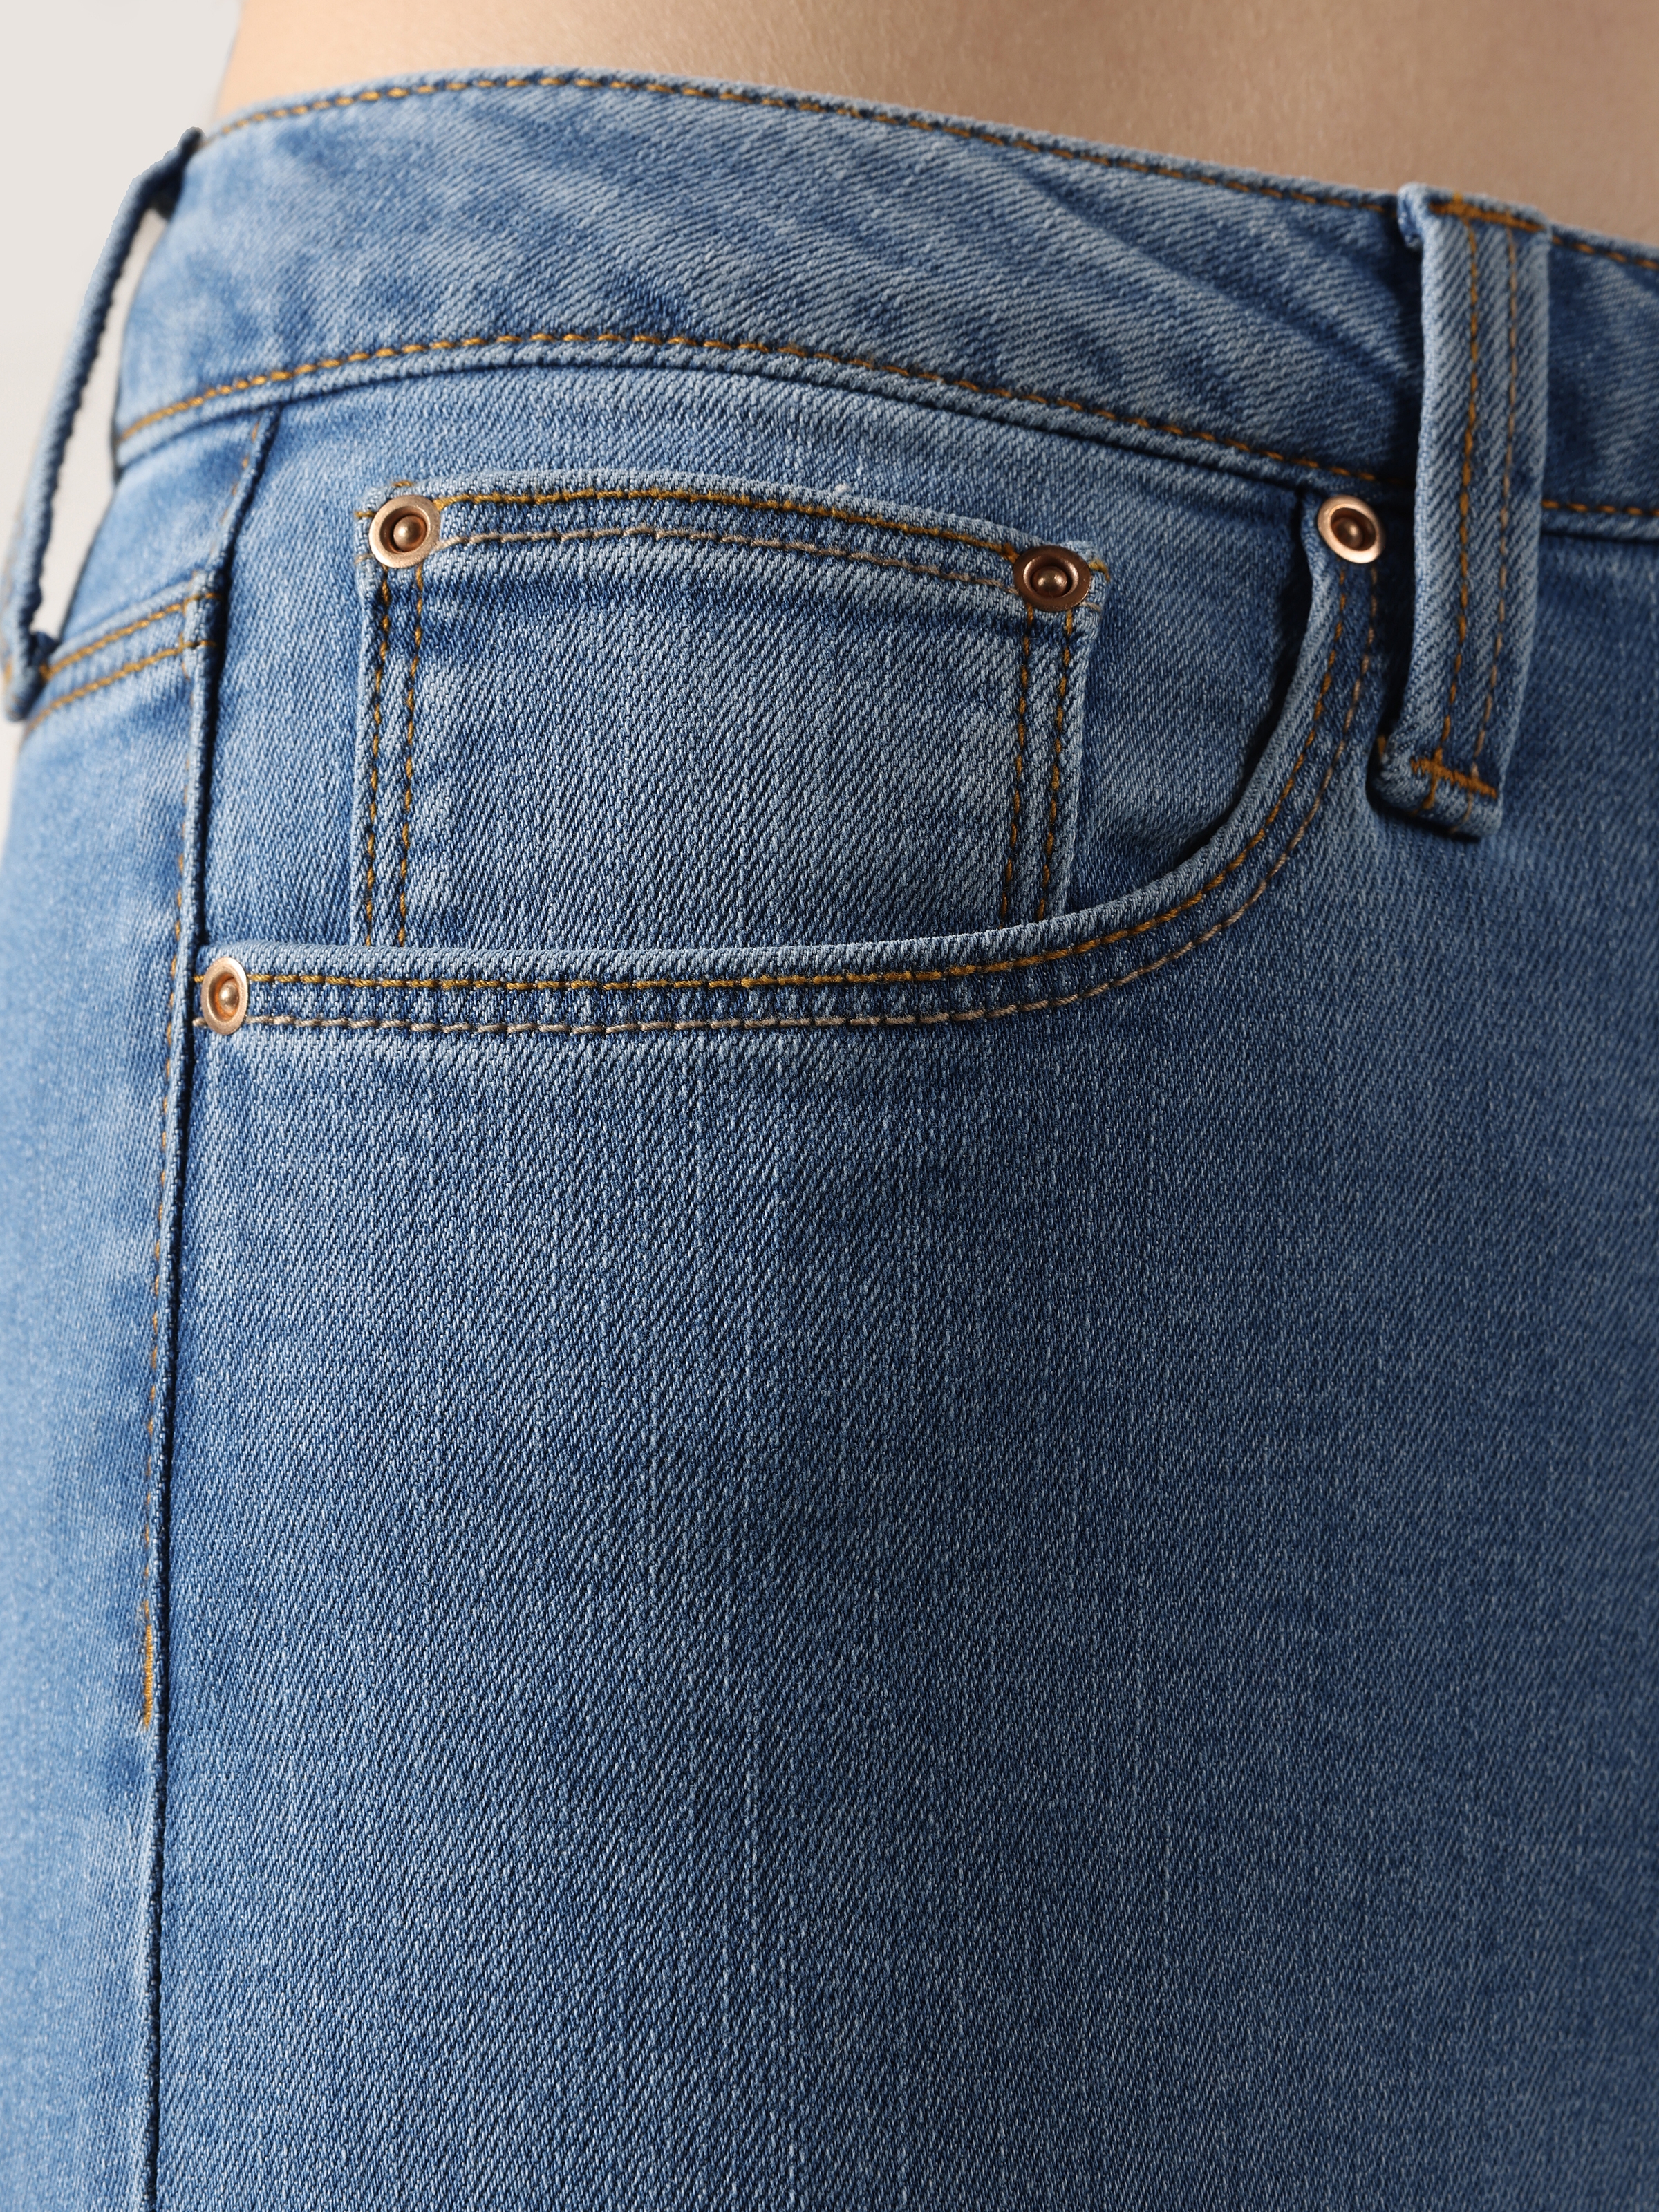 Afficher les détails de 760 Diana Pantalon En Jean Bleu Taille Haute À Jambe Étroite Et Coupe Super Slim Pour Femme